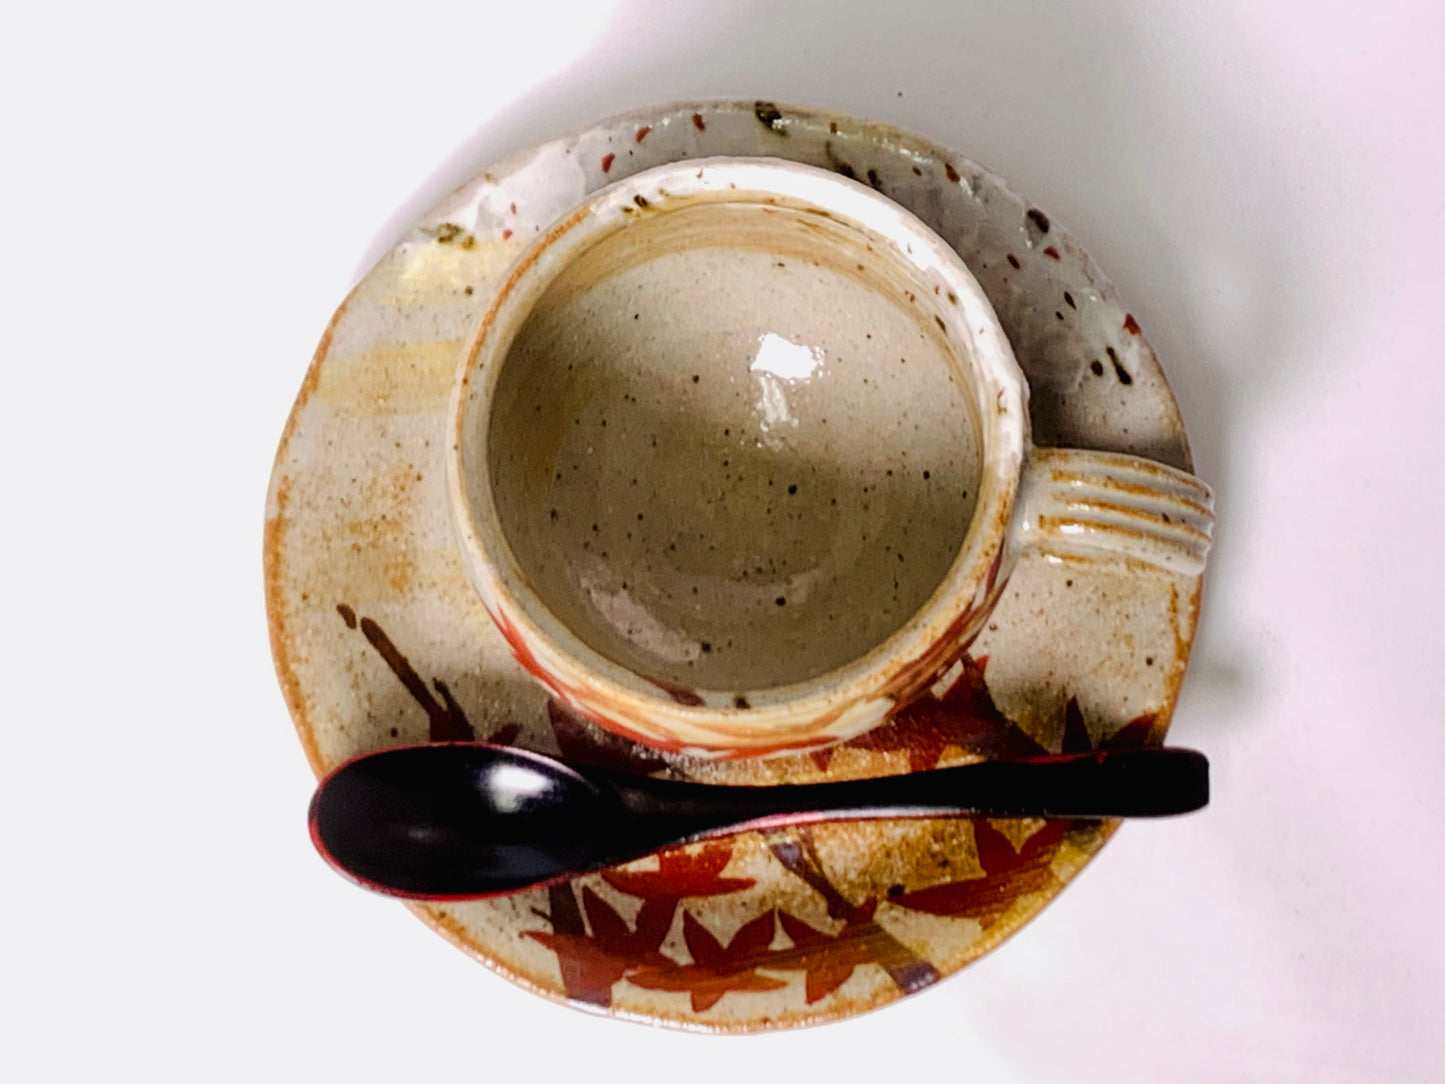 金彩雲錦 コーヒー 碗 小皿 14cm セット 漆 ティースプーン付き